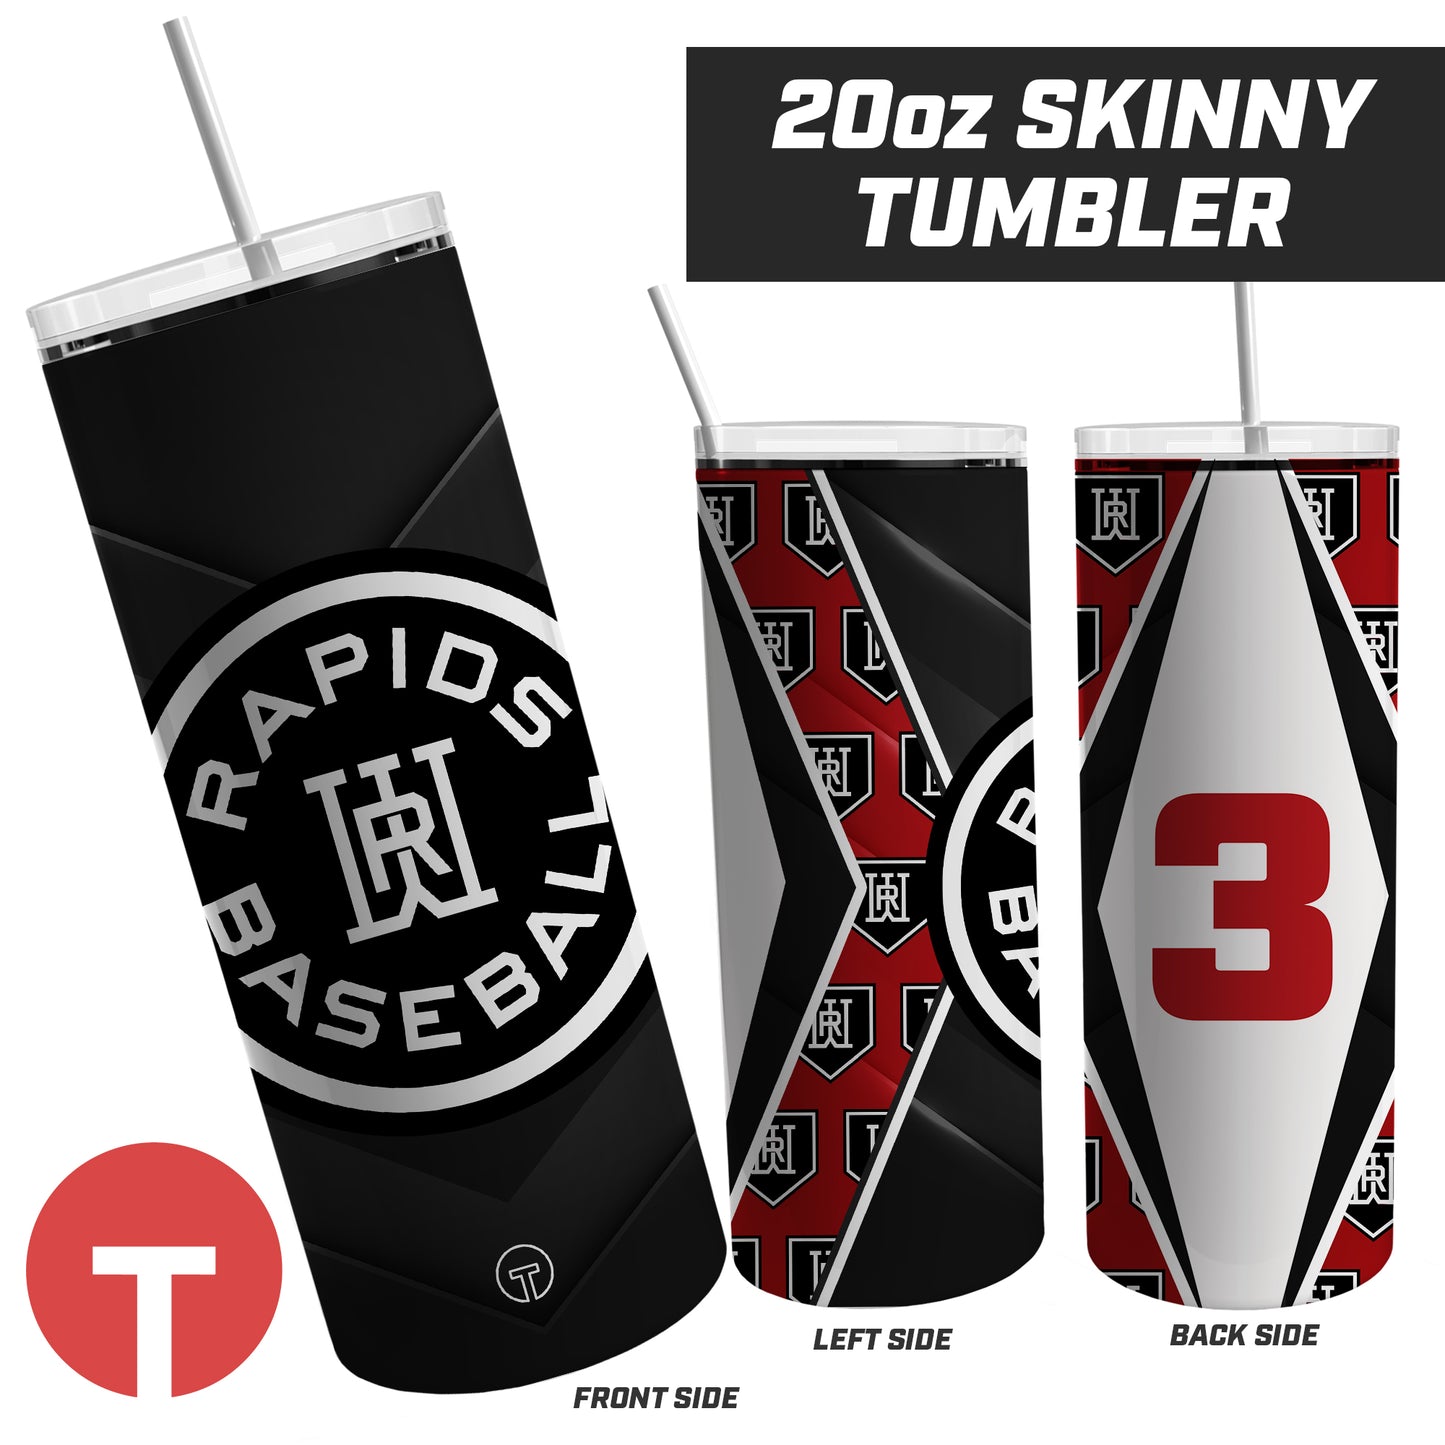 Rapids Baseball - 20oz Skinny Tumbler